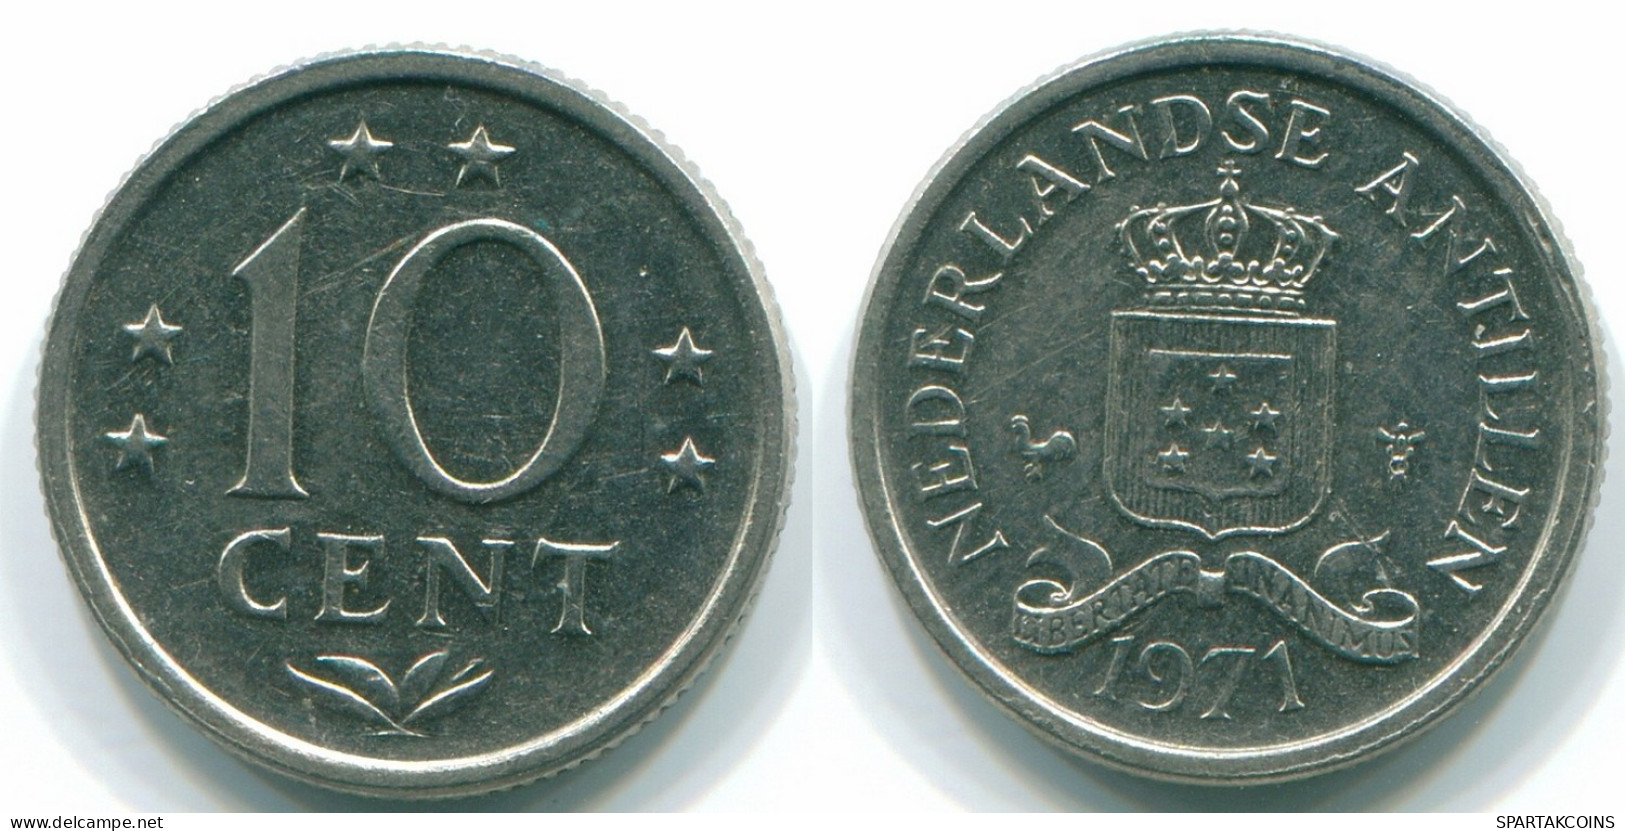 10 CENTS 1971 NETHERLANDS ANTILLES Nickel Colonial Coin #S13391.U.A - Niederländische Antillen